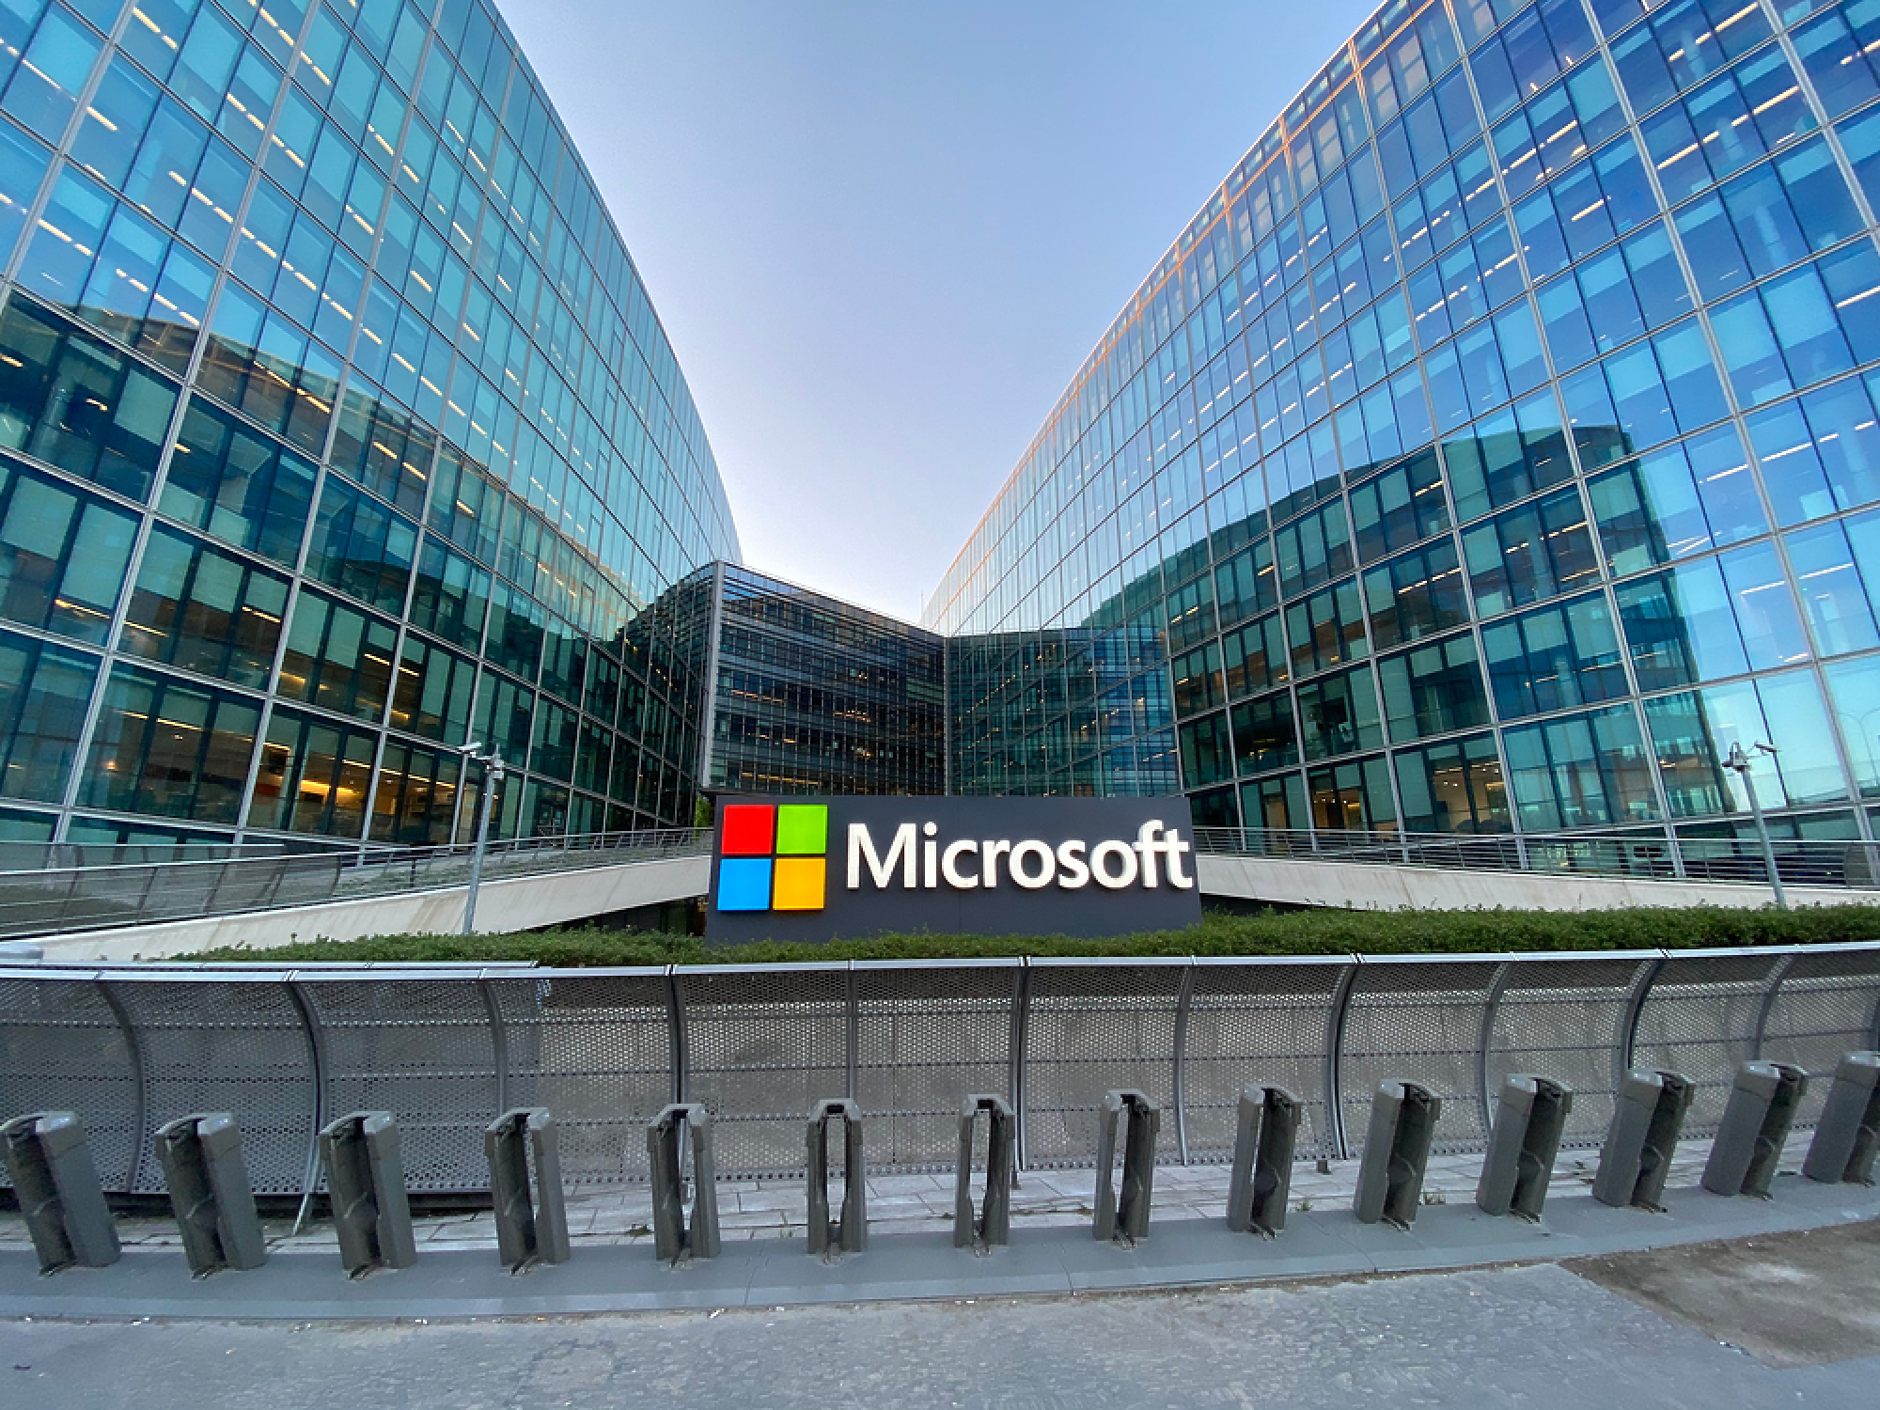 Microsoft се съгласи да плати 2,9 млн. долара за нарушаване на санкции срещу три държави